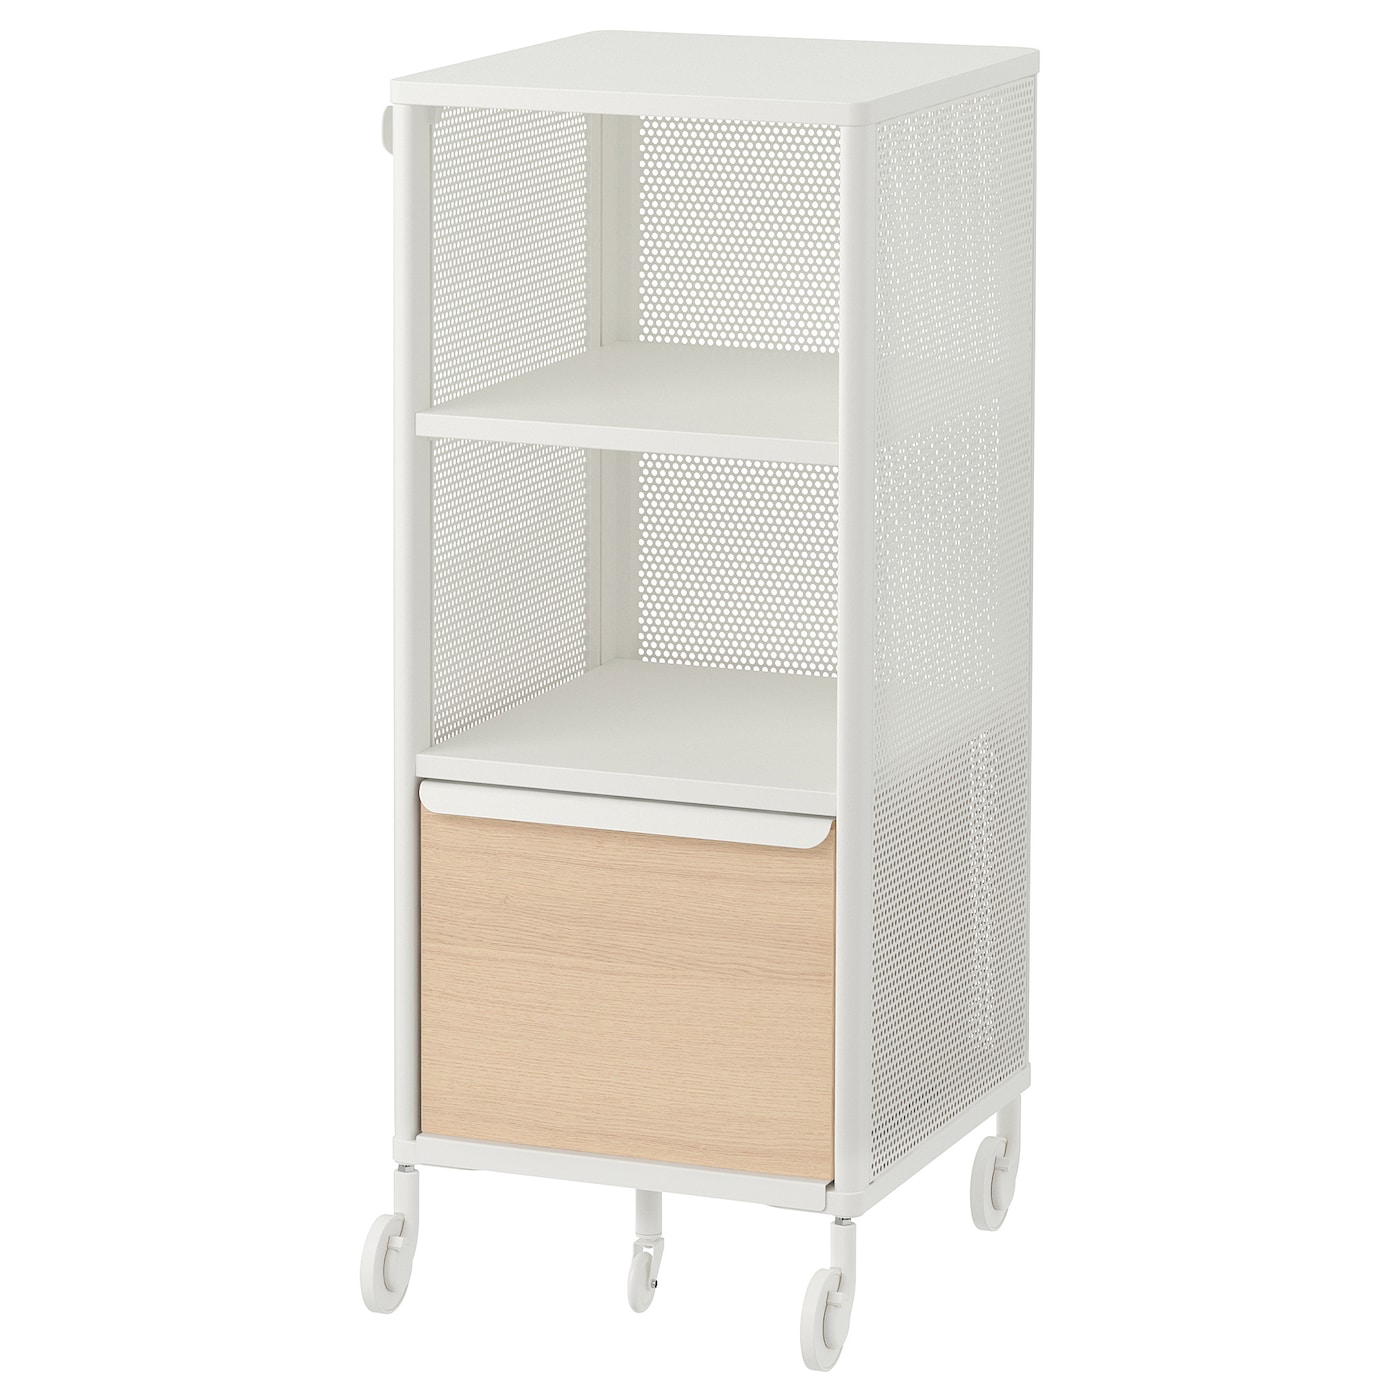 Офисный шкаф с умным замком - IKEA BEKANT, 41х101см, белый/под беленый дуб, ИКЕА БЕКАНТ